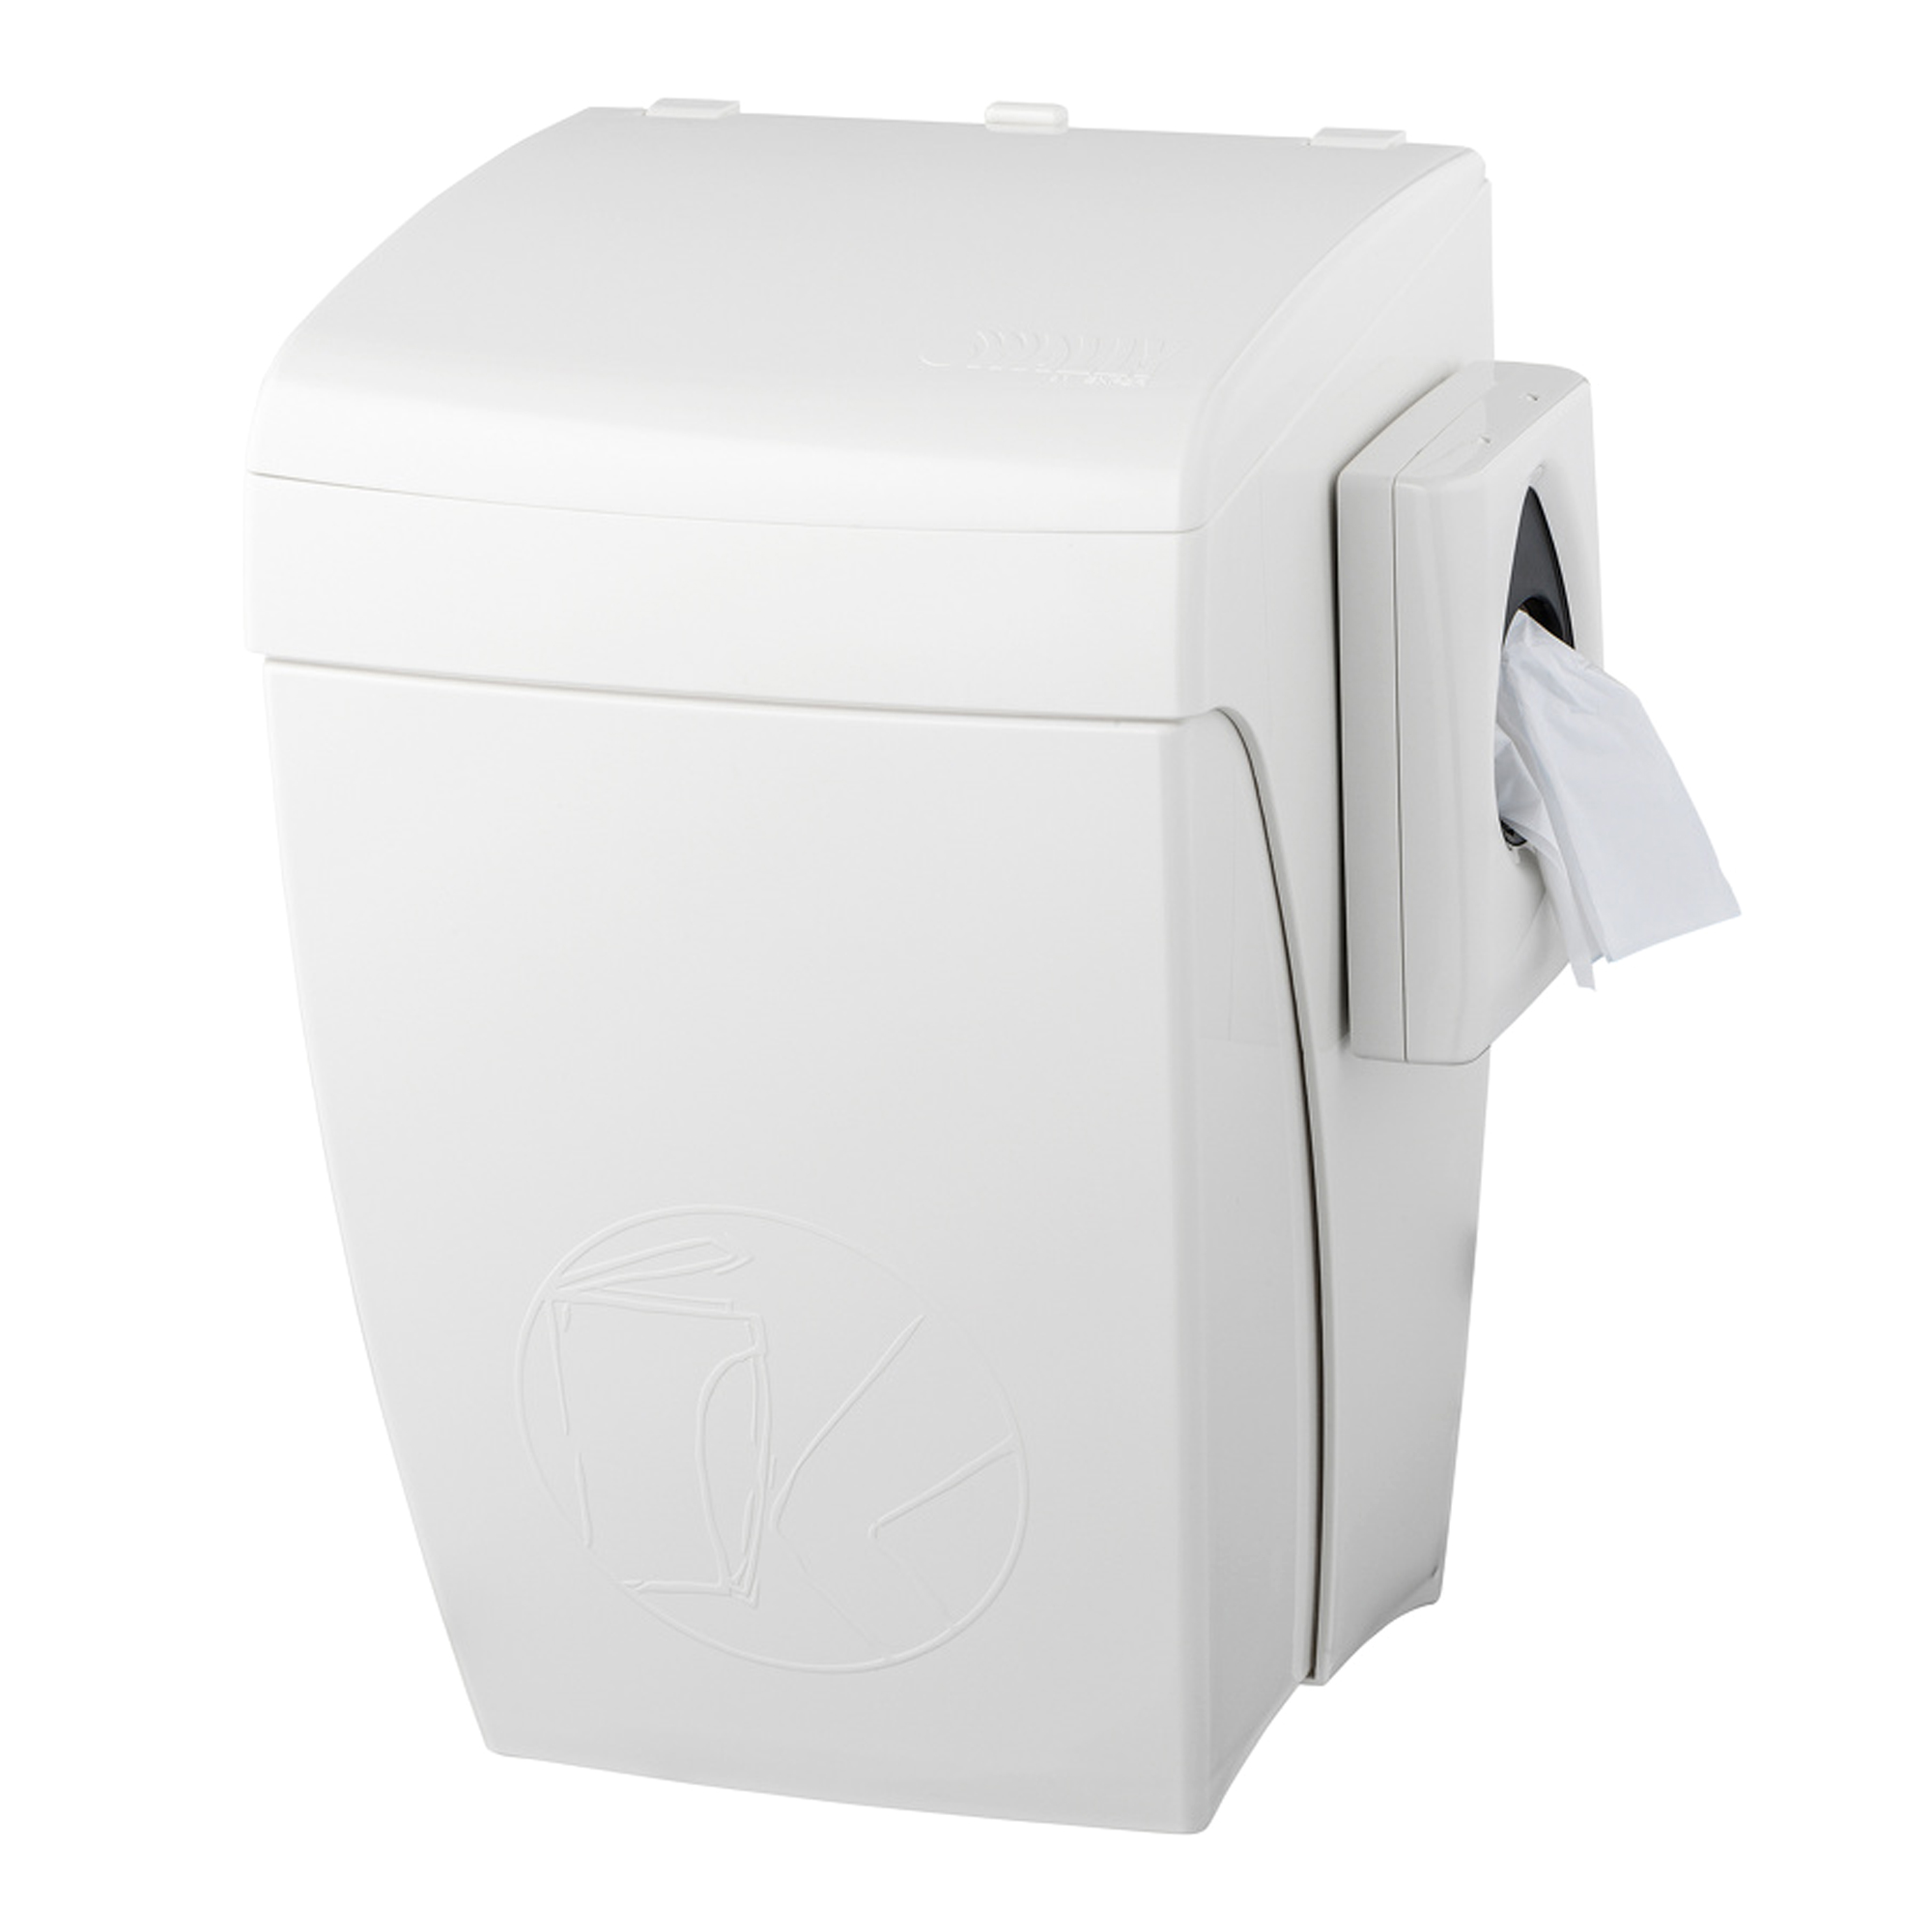 PlastiQline Hygiene-Abfallbehälter 8 Liter + Hygienebeutelhalter Knie-Bedienung PQHBS weiß 5667_1